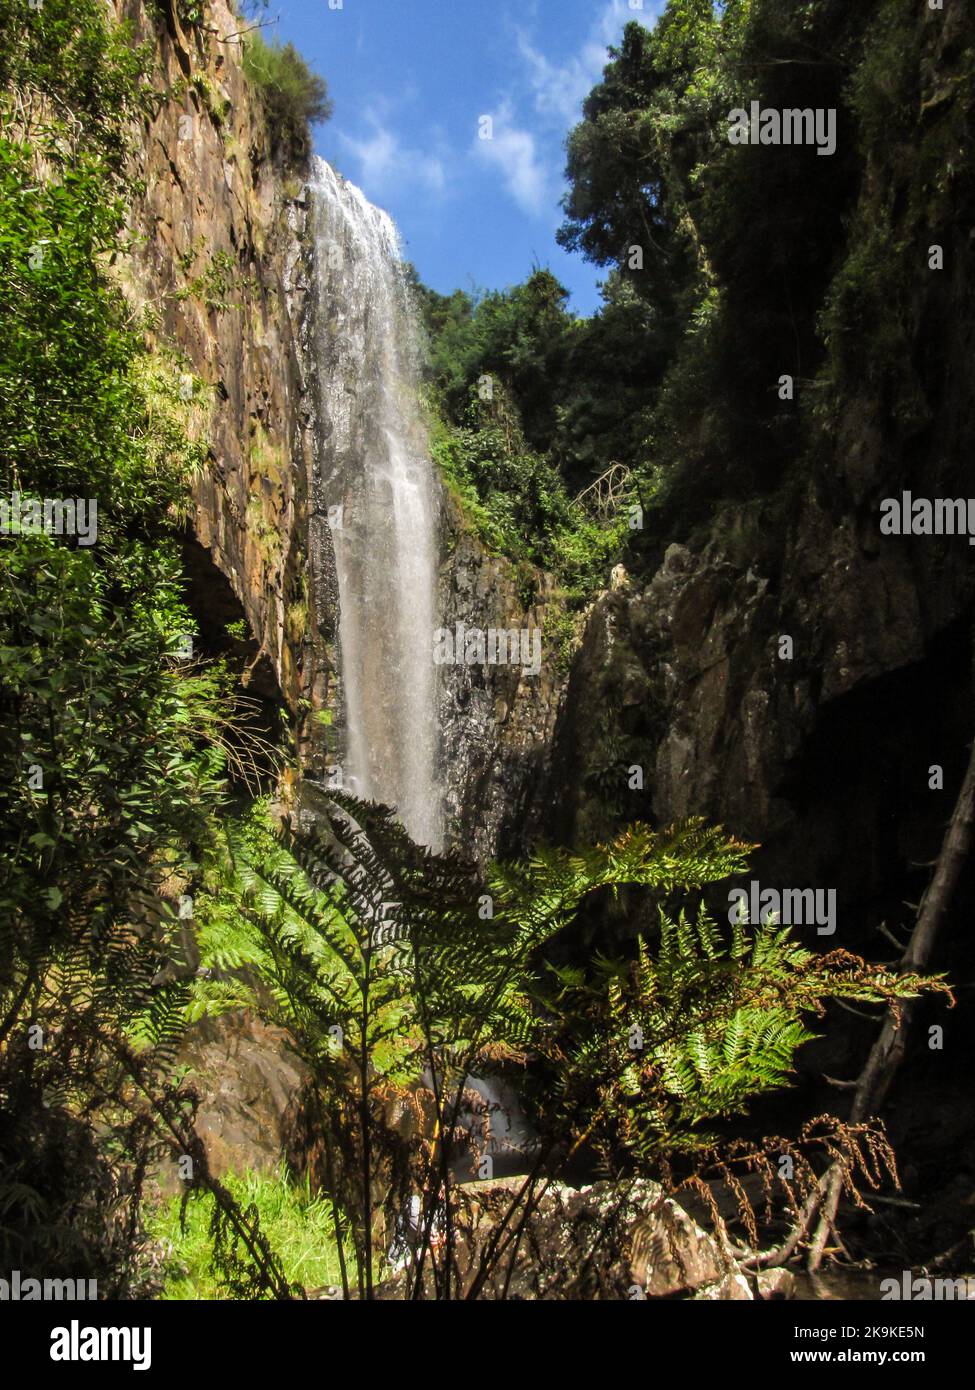 Majestätischer Wasserfall in einer geschützten Schlucht, mit einem Waldfarn im Vordergrund, in Kaapsche Hoop, Mpumalanga, Südafrika. Stockfoto